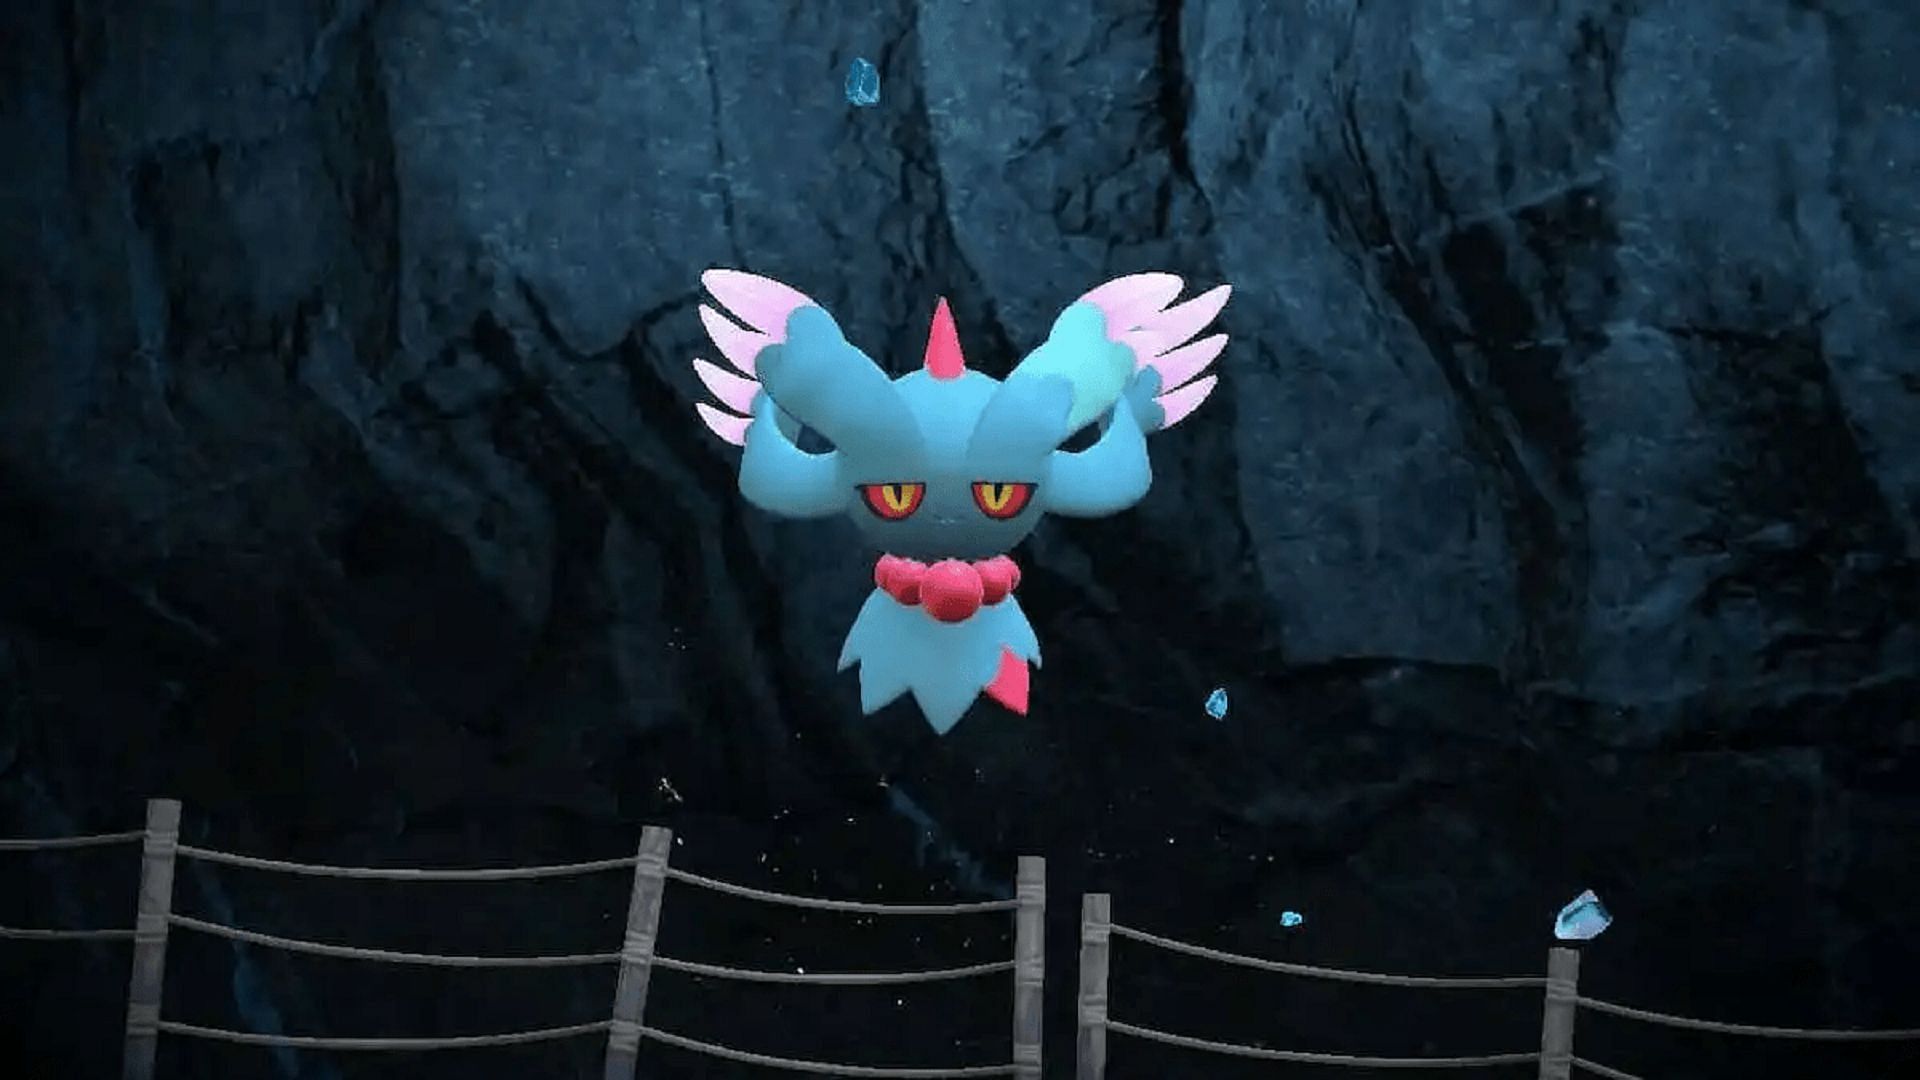 Flutter Mane is a Paradox variant of Misdreavus in Pokemon Scarlet and Violet (Image via Game Freak)